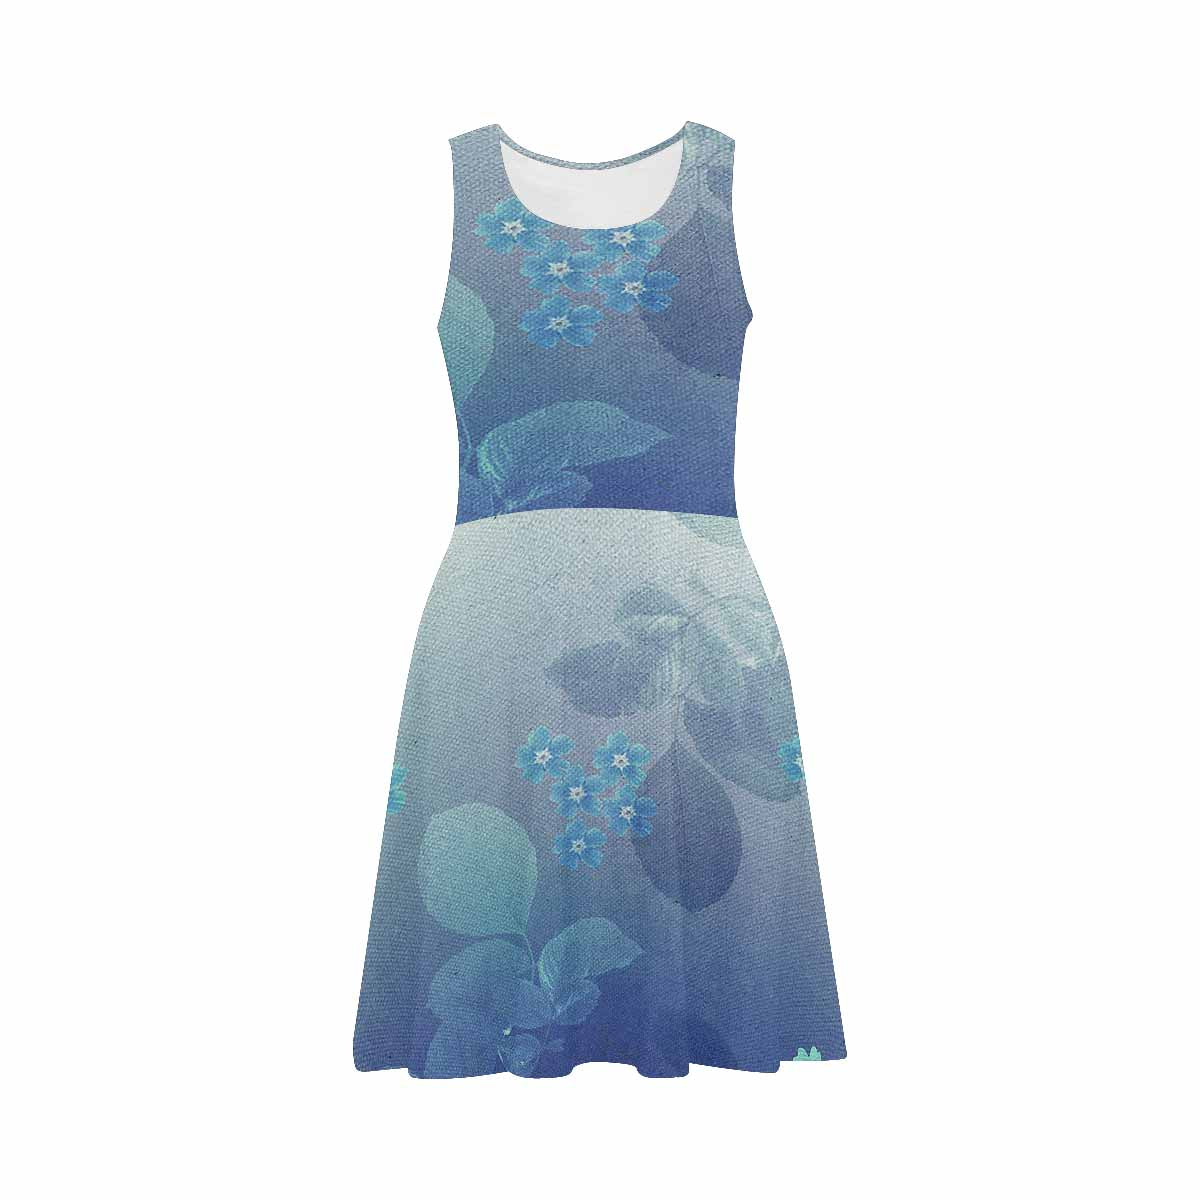 Antique General summer dress, MODEL 09534, design 40